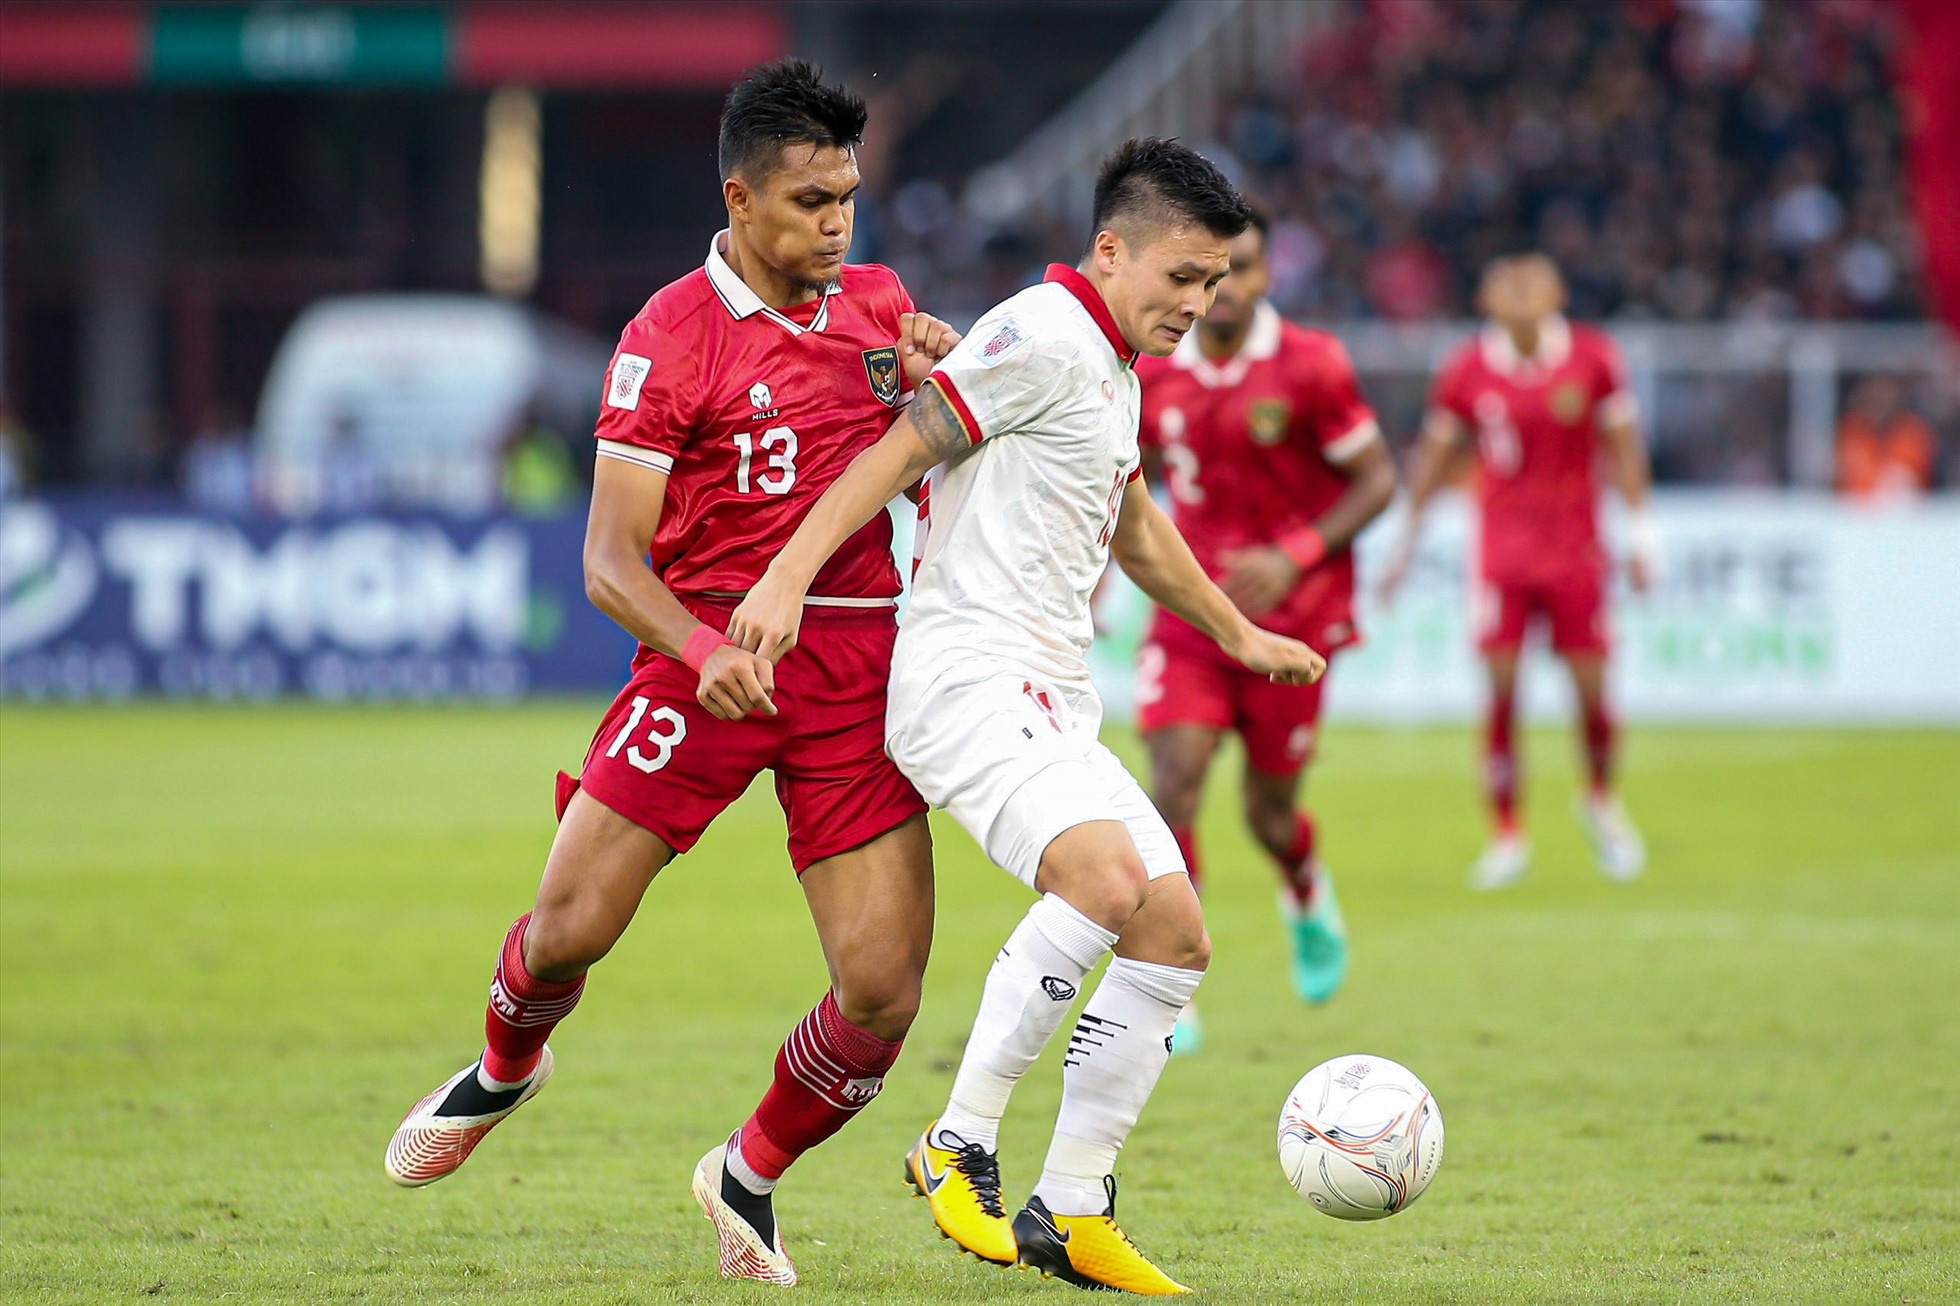 Cầu thủ được đánh giá cao nhất bên phía đội tuyển Việt Nam là Nguyễn Quang Hải luôn bị 2 tới 3 cầu thủ quây bắt mỗi khi có bóng.